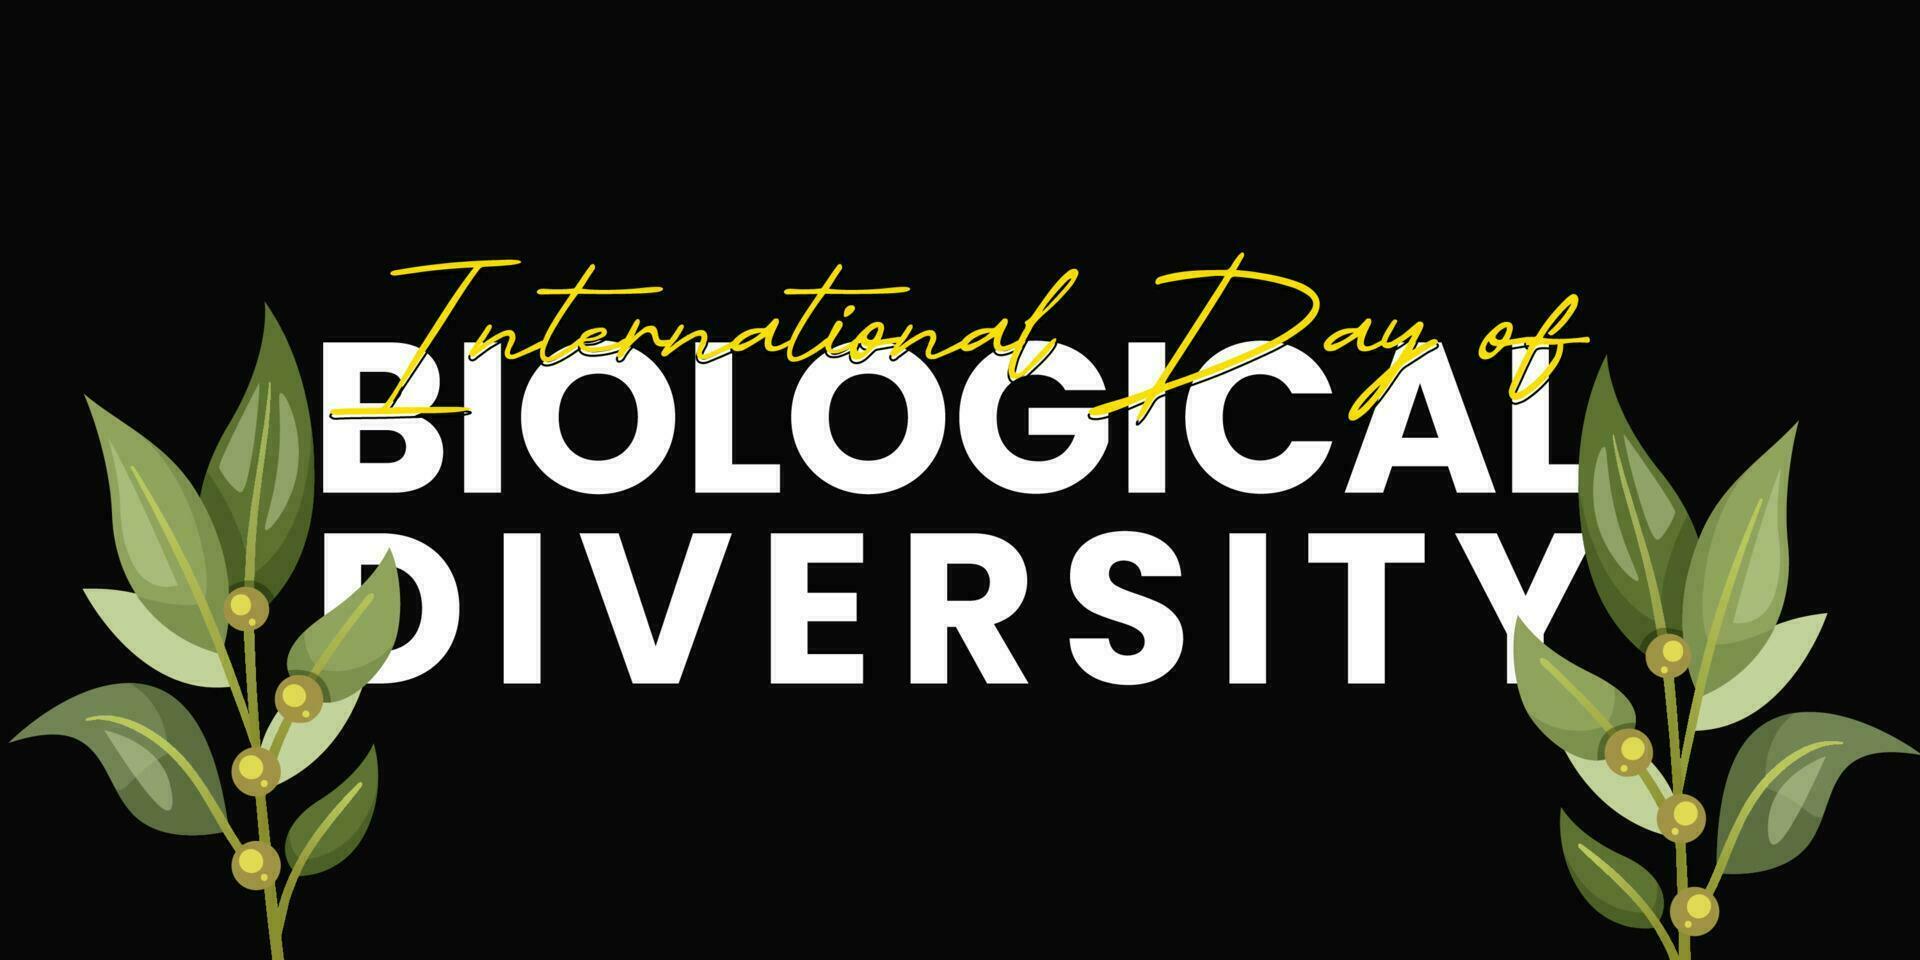 mão desenhado letras e moderno caligrafia do internacional dia do biológico diversidade ilustração vetor